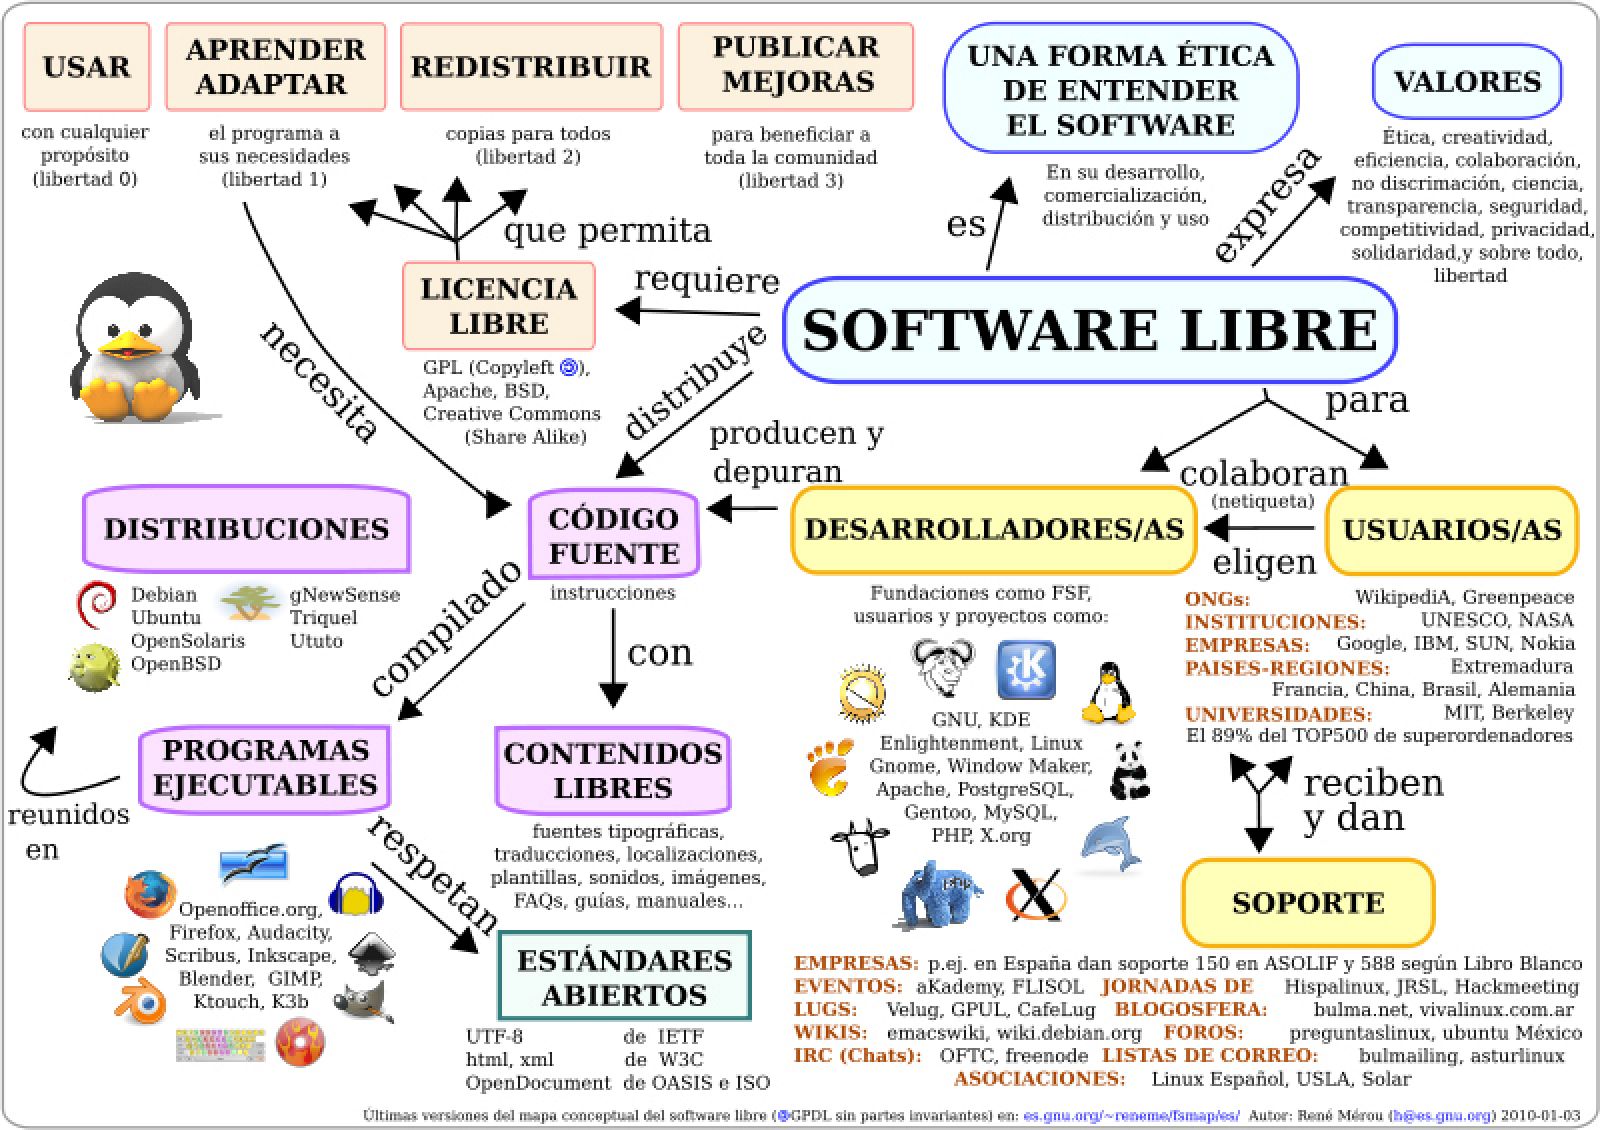 El software libre permite usar un programa para cualquier propósito y sin restricciones, modificarlo, adaptarlo y redistribuirlo